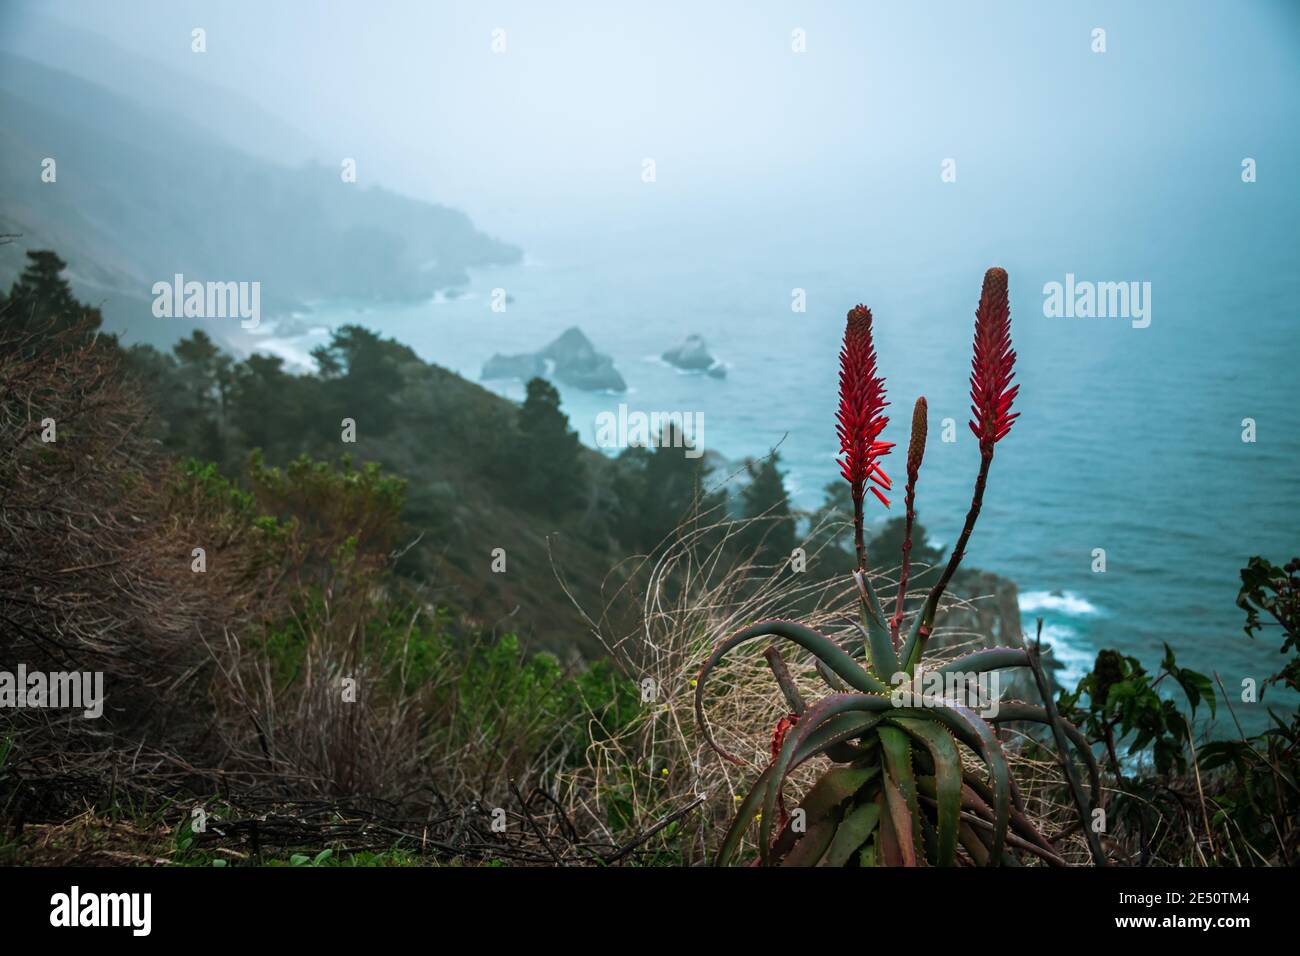 Fleur succulente et vue d'ensemble de Big sur pendant une Californie Aventure de la photographie de la côte Banque D'Images